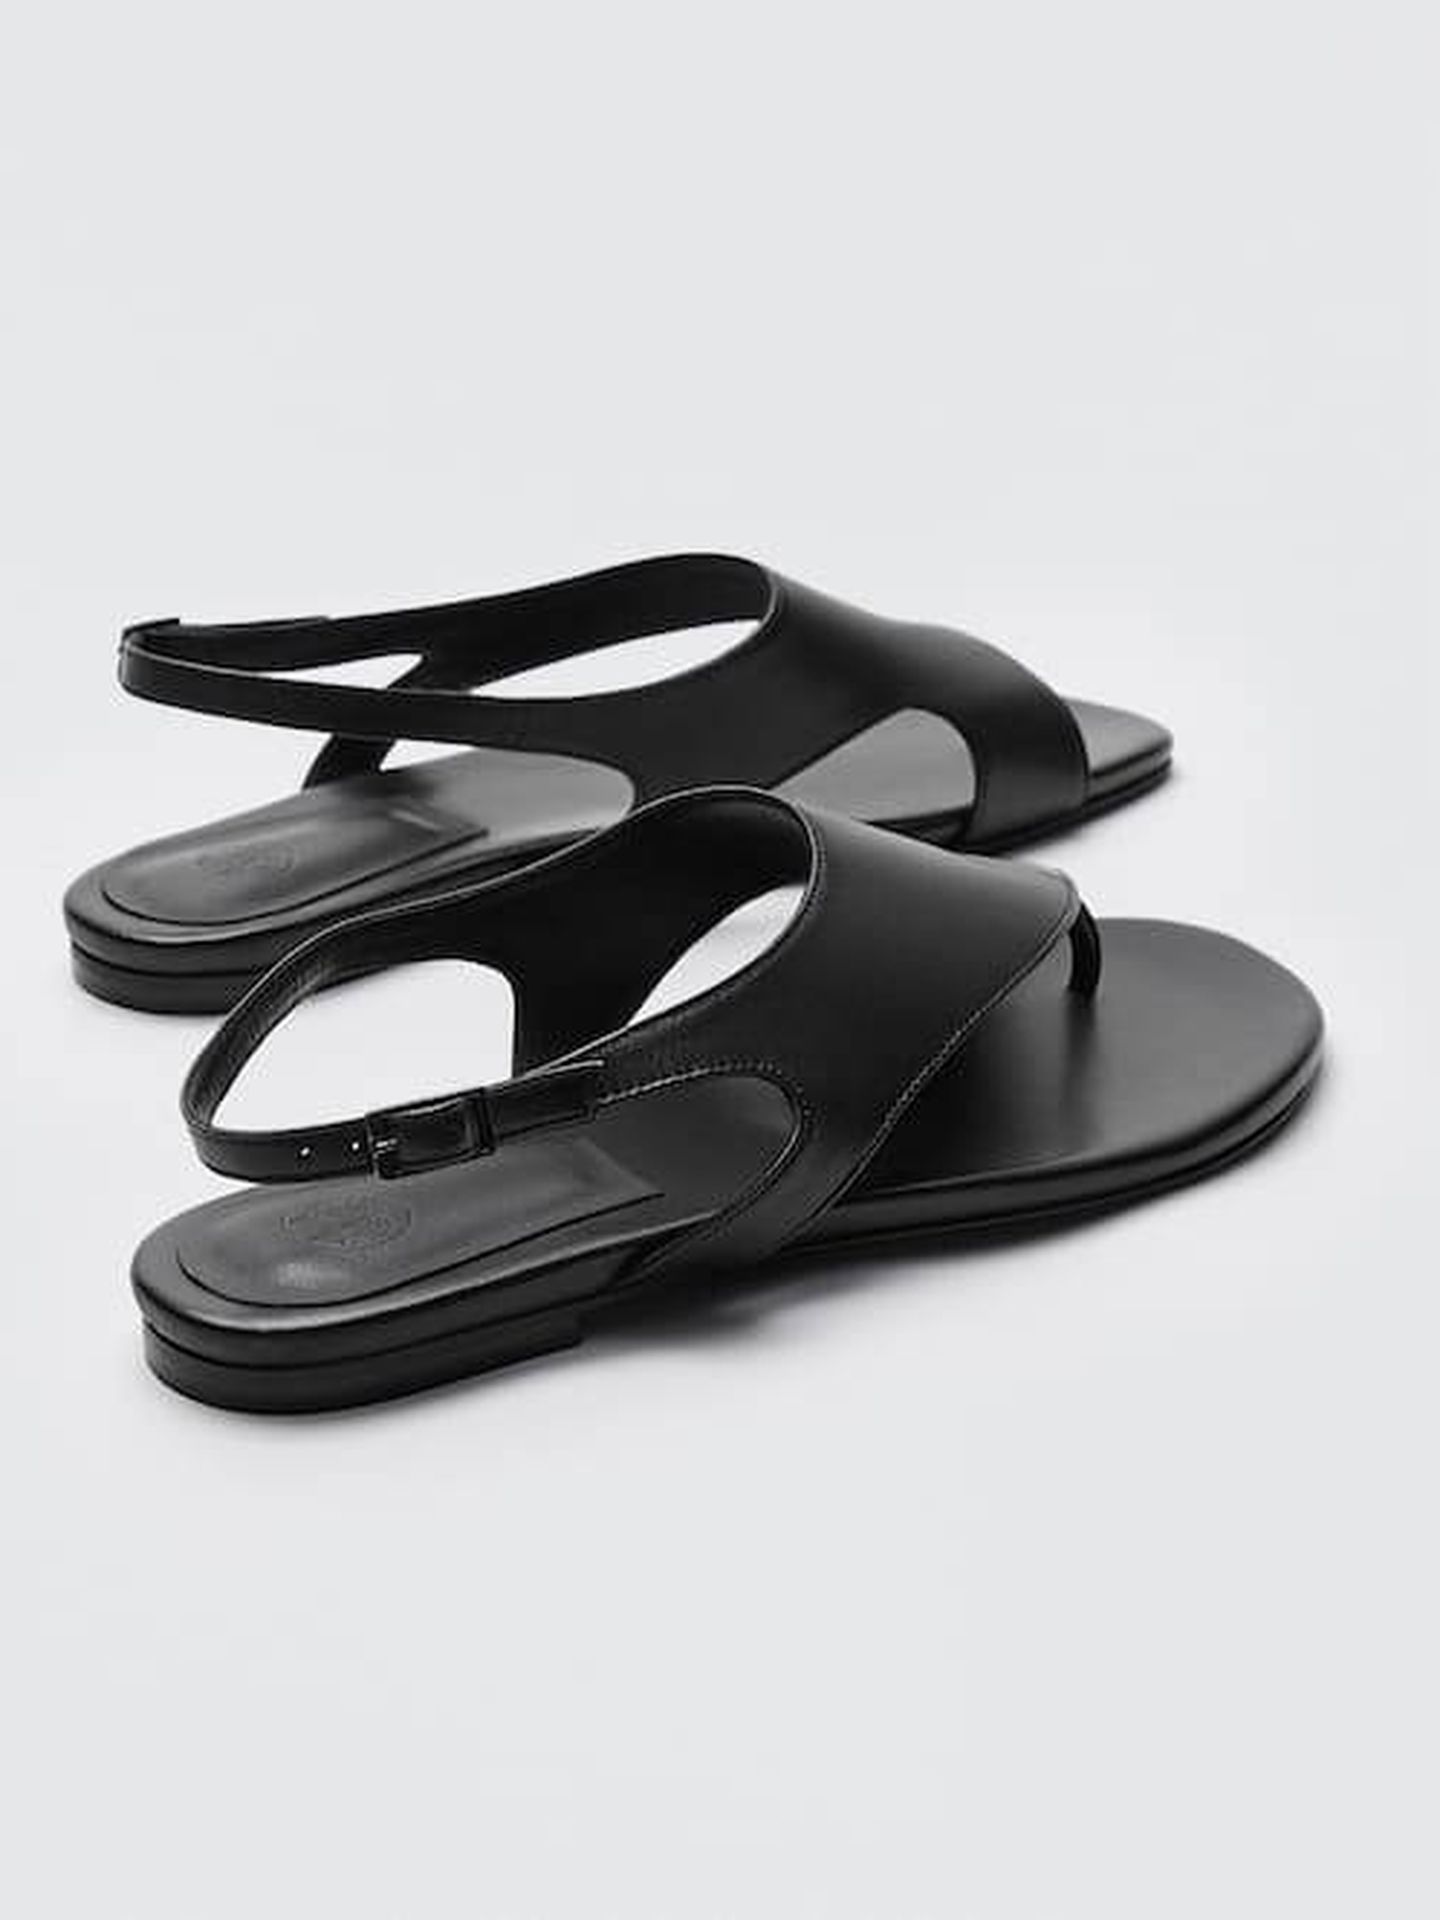 Las sandalias planas de la tienda online de Massimo Dutti. (Cortesía)